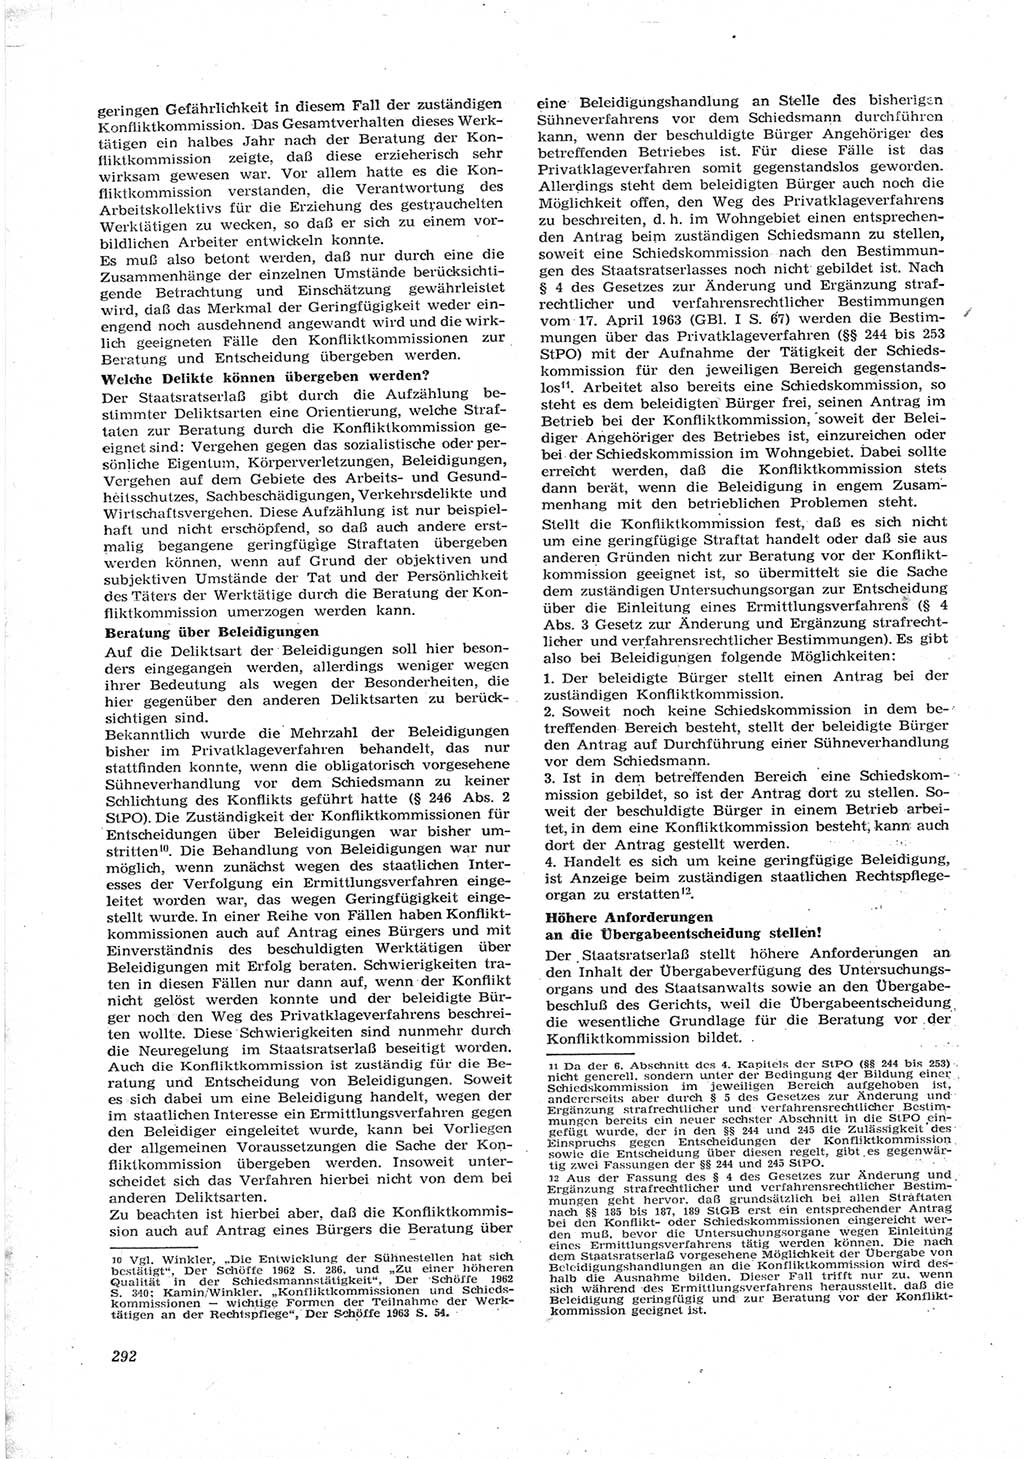 Neue Justiz (NJ), Zeitschrift für Recht und Rechtswissenschaft [Deutsche Demokratische Republik (DDR)], 17. Jahrgang 1963, Seite 292 (NJ DDR 1963, S. 292)